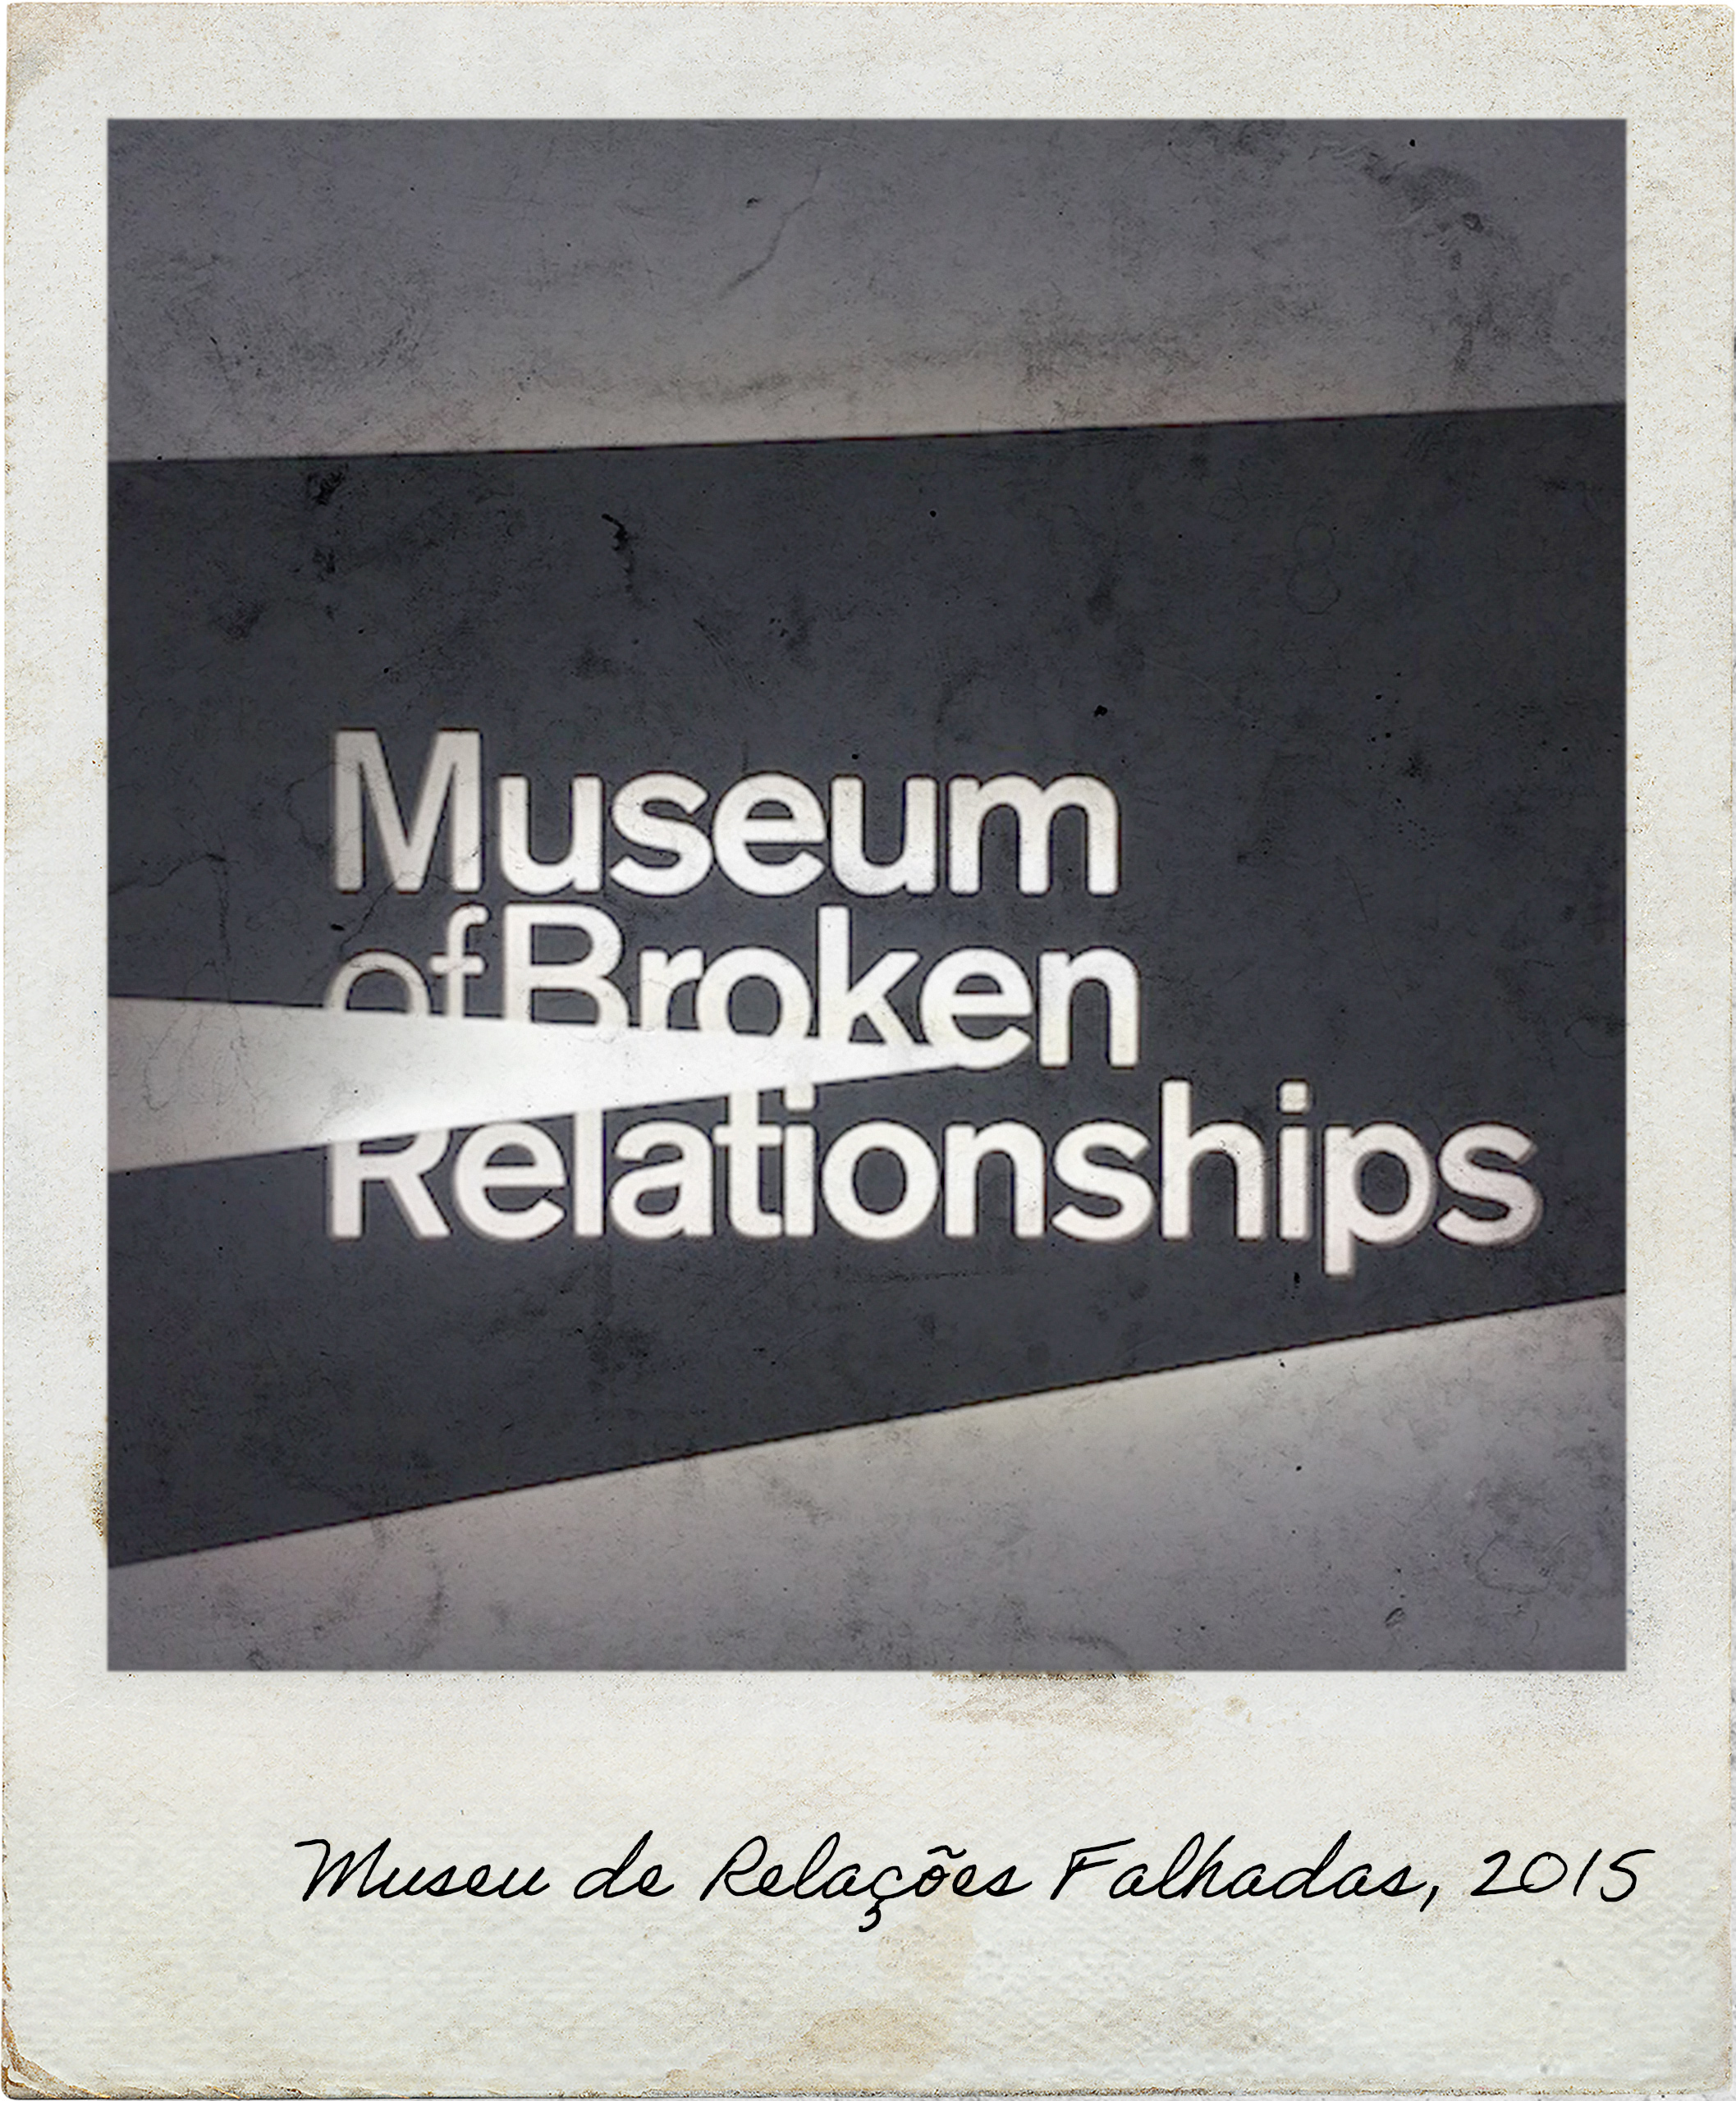 Museu de Relações Falhadas